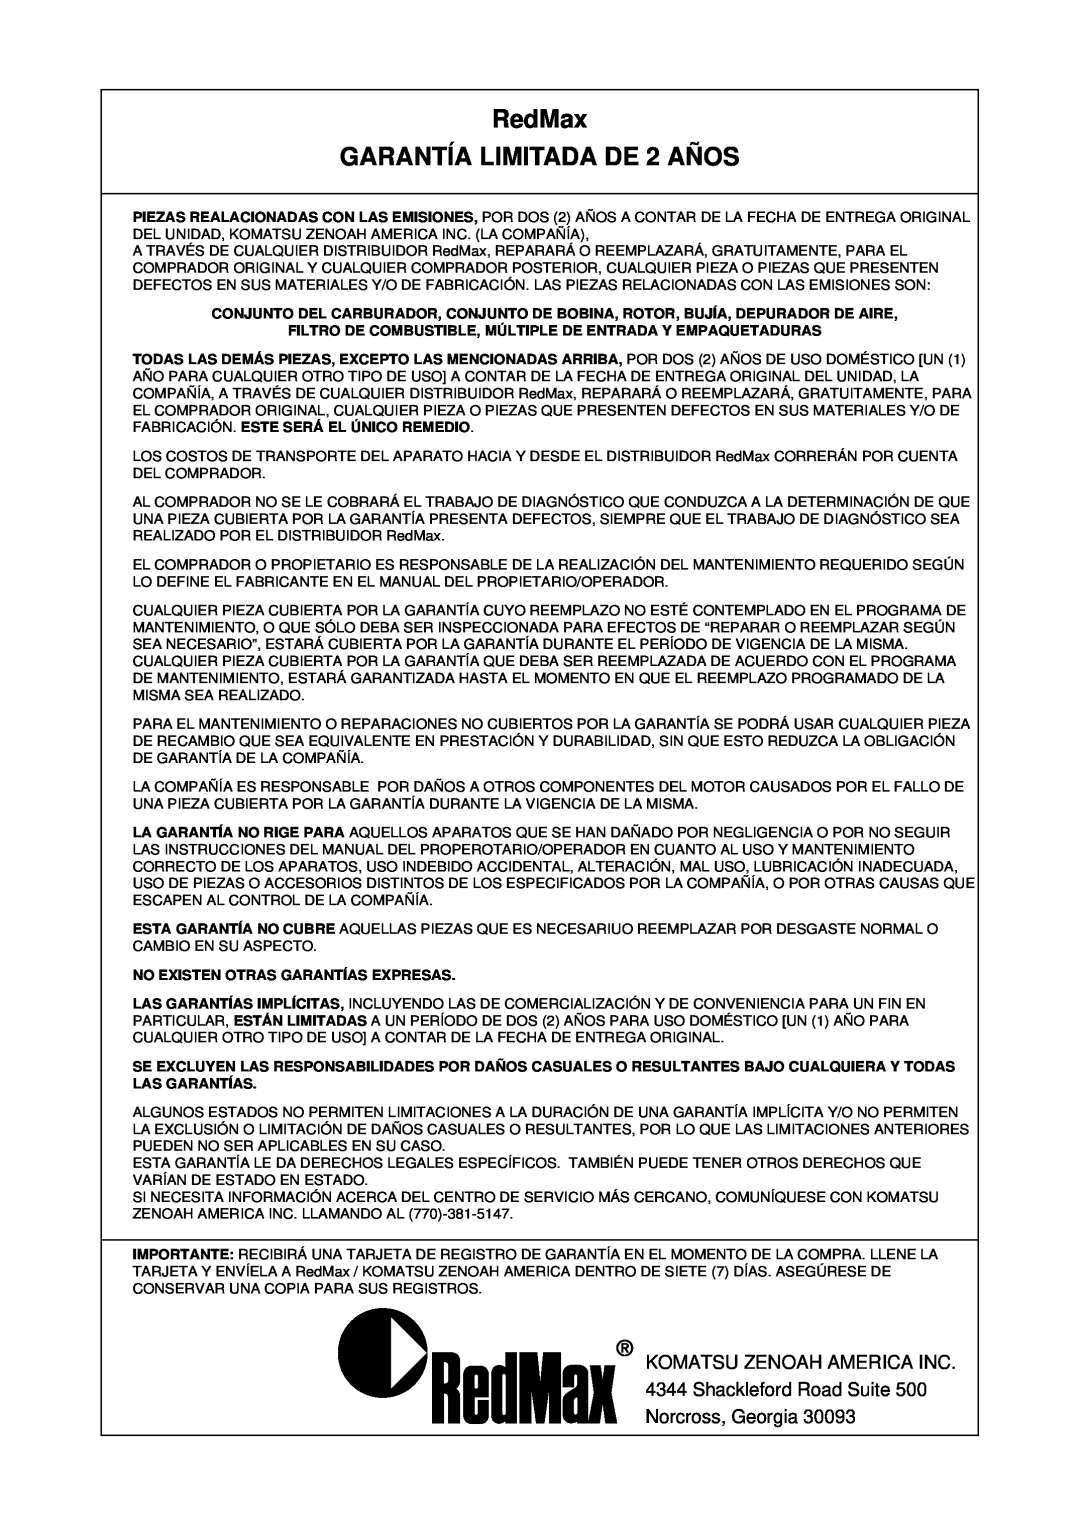 RedMax EB7001RH manual RedMax GARANTÍA LIMITADA DE 2 AÑOS, No Existen Otras Garantías Expresas 